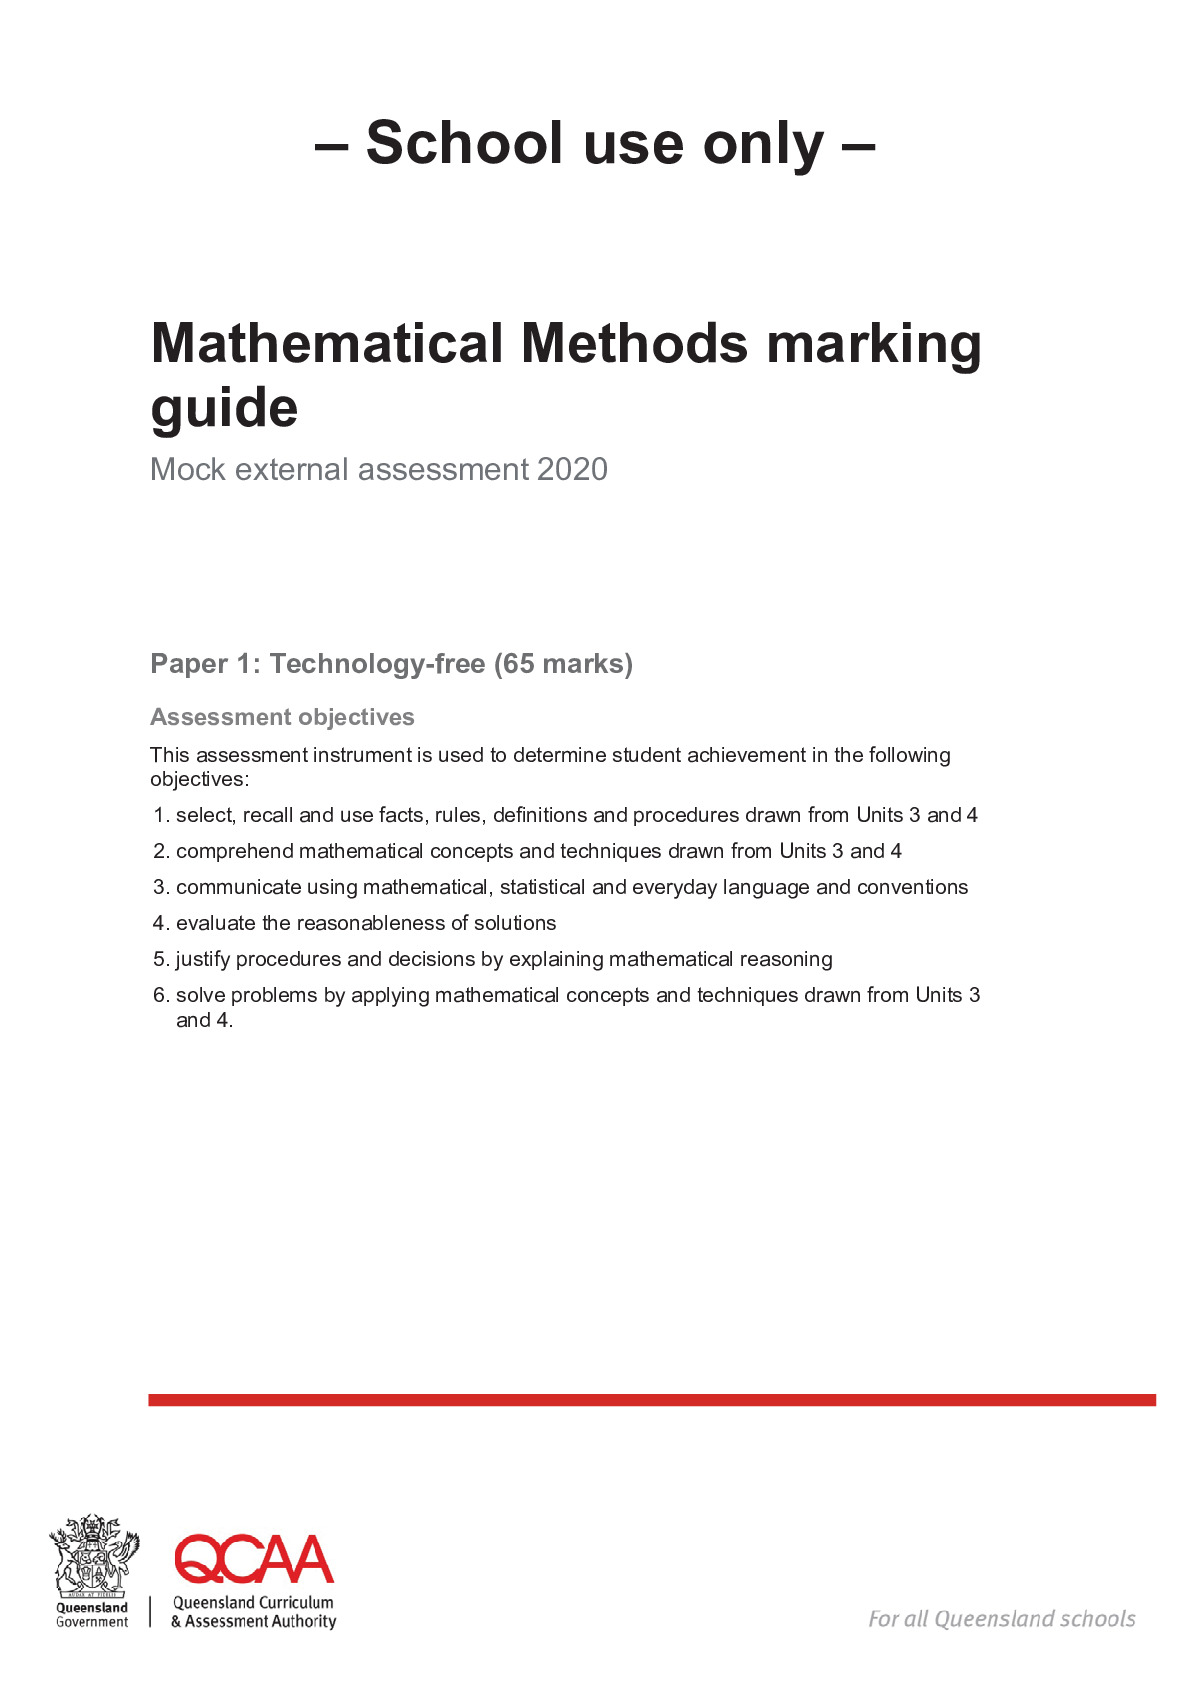 MAM_School_use_mock_1_marking_guide.pdf